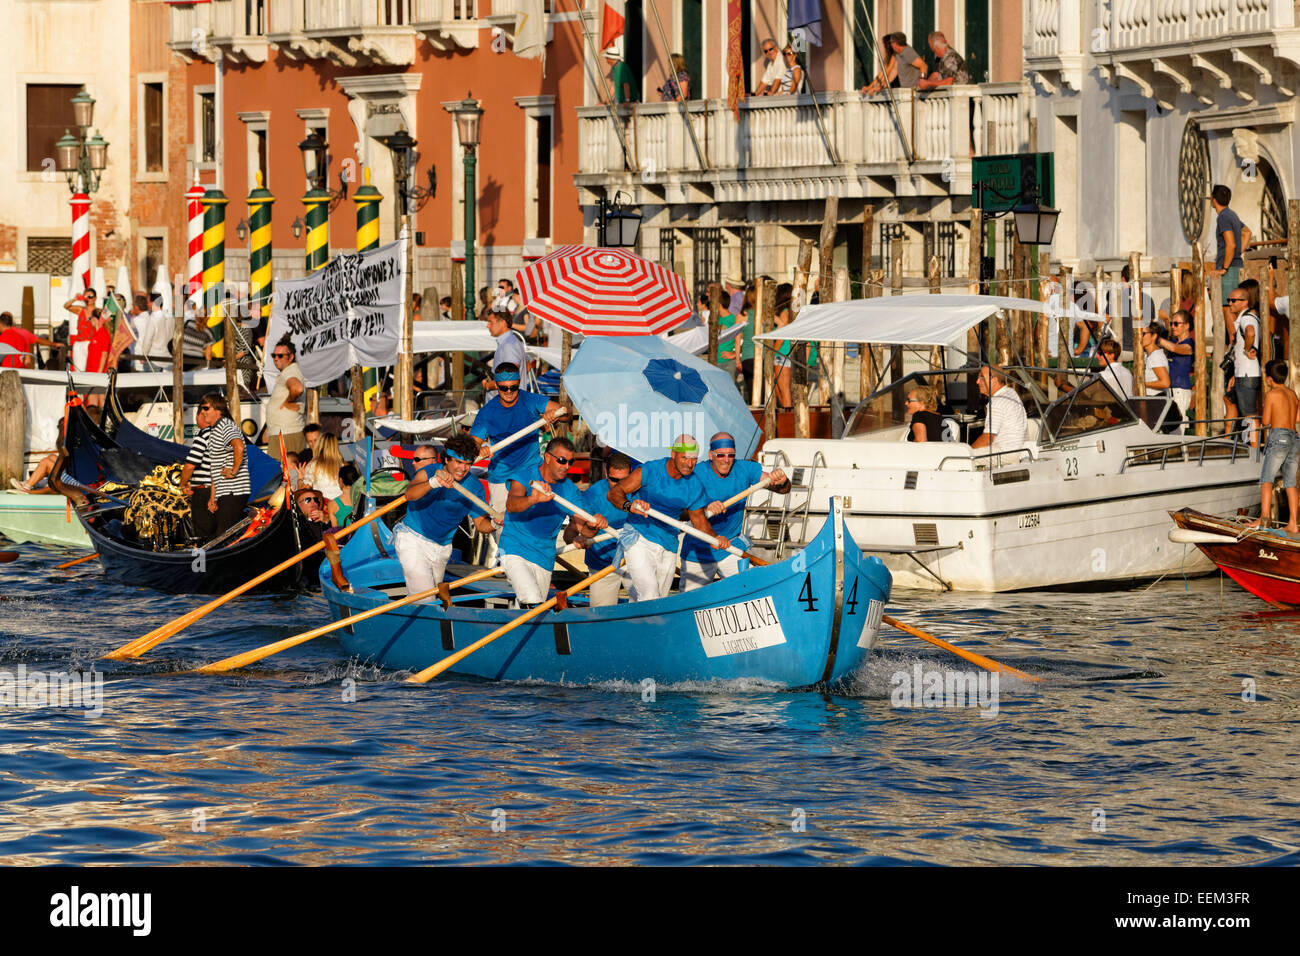 Men's Caorline contest, Regata Storica, historical regatta, on the Canal Grande, Venice, Veneto, Italy Stock Photo